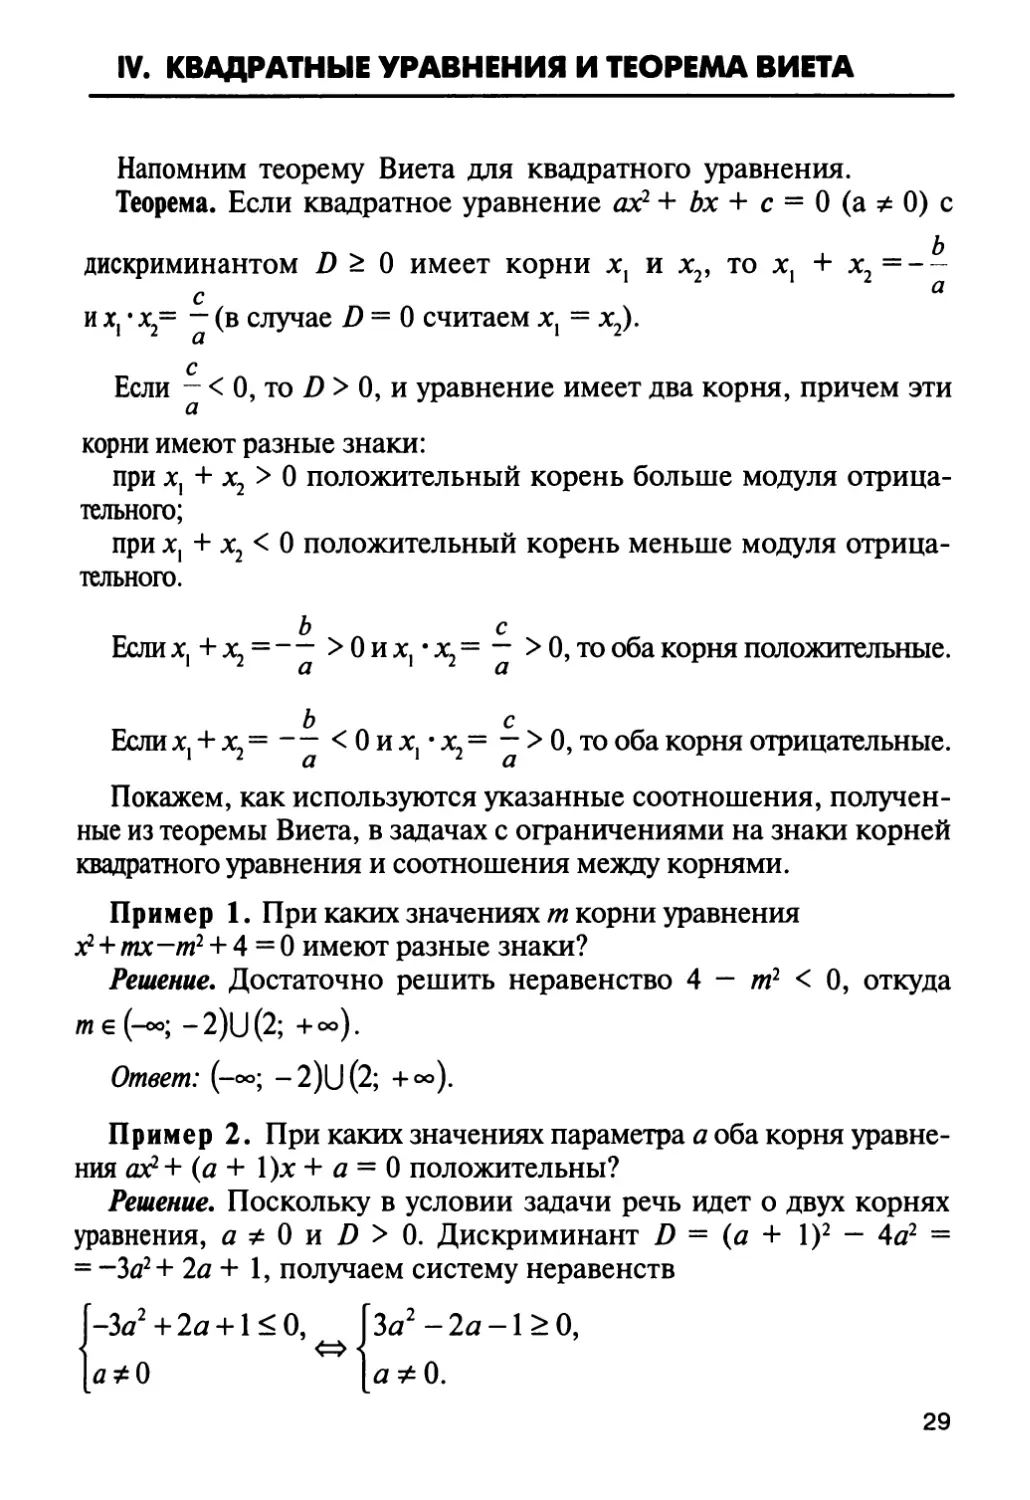 IV. Квадратные уравнения и теорема Виета